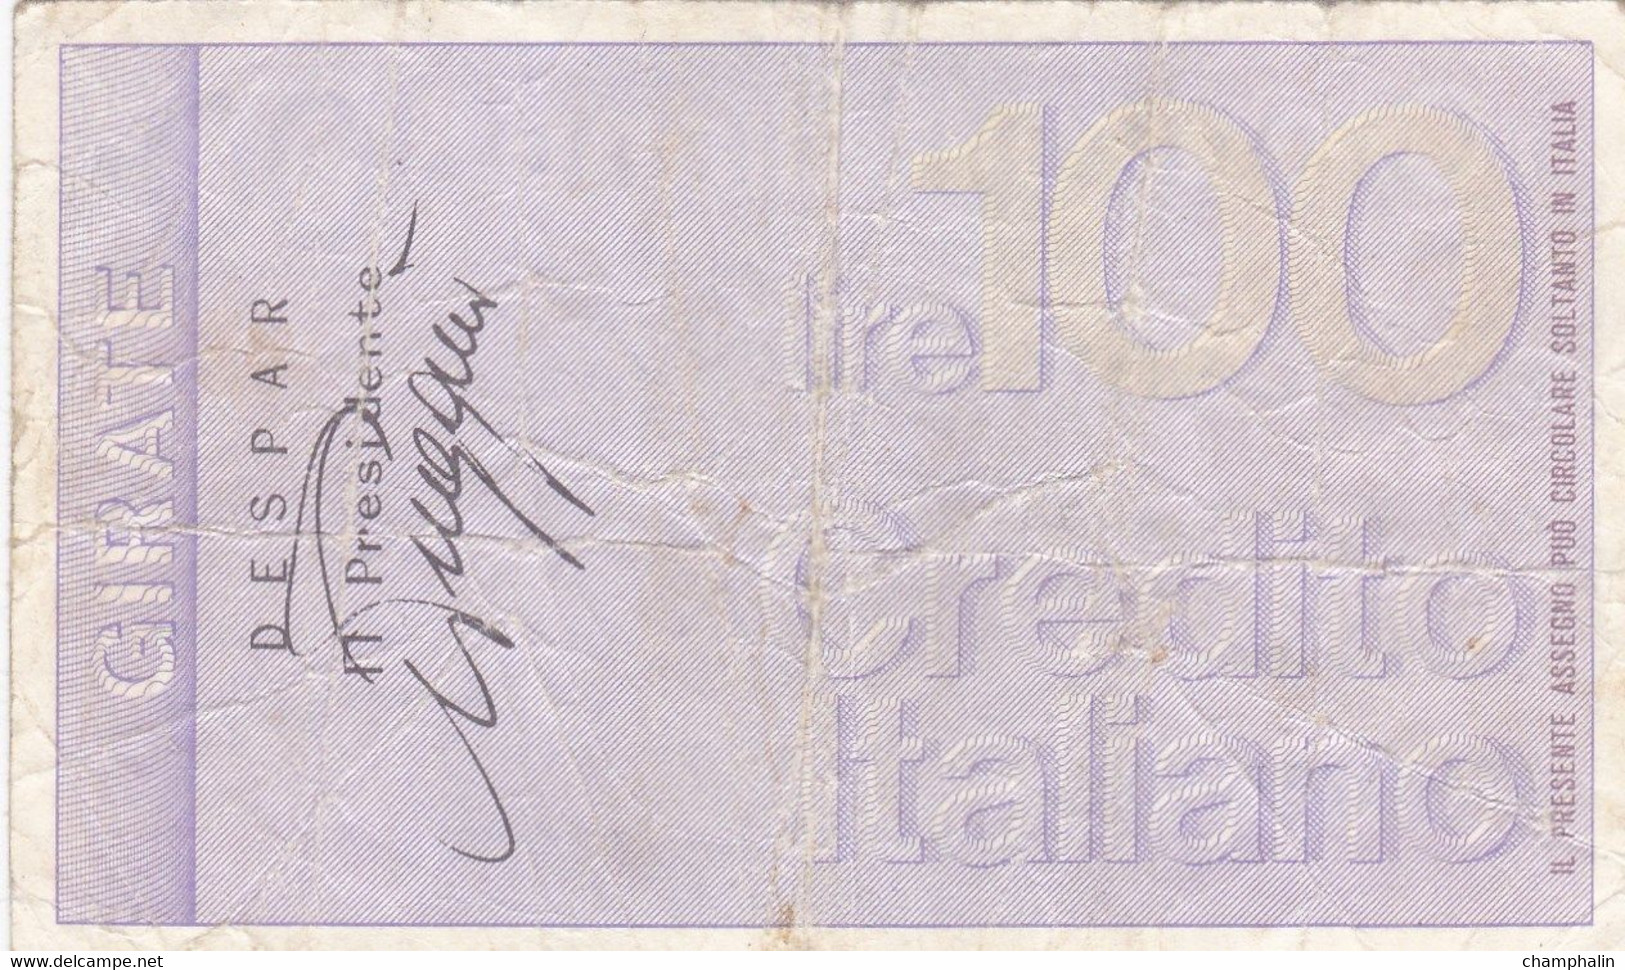 Italie - Billet De 100 Lire - Credito Italiano - 21 Septembre 1976 - Emissions Provisionnelles - Chèque - [ 4] Emissioni Provvisorie